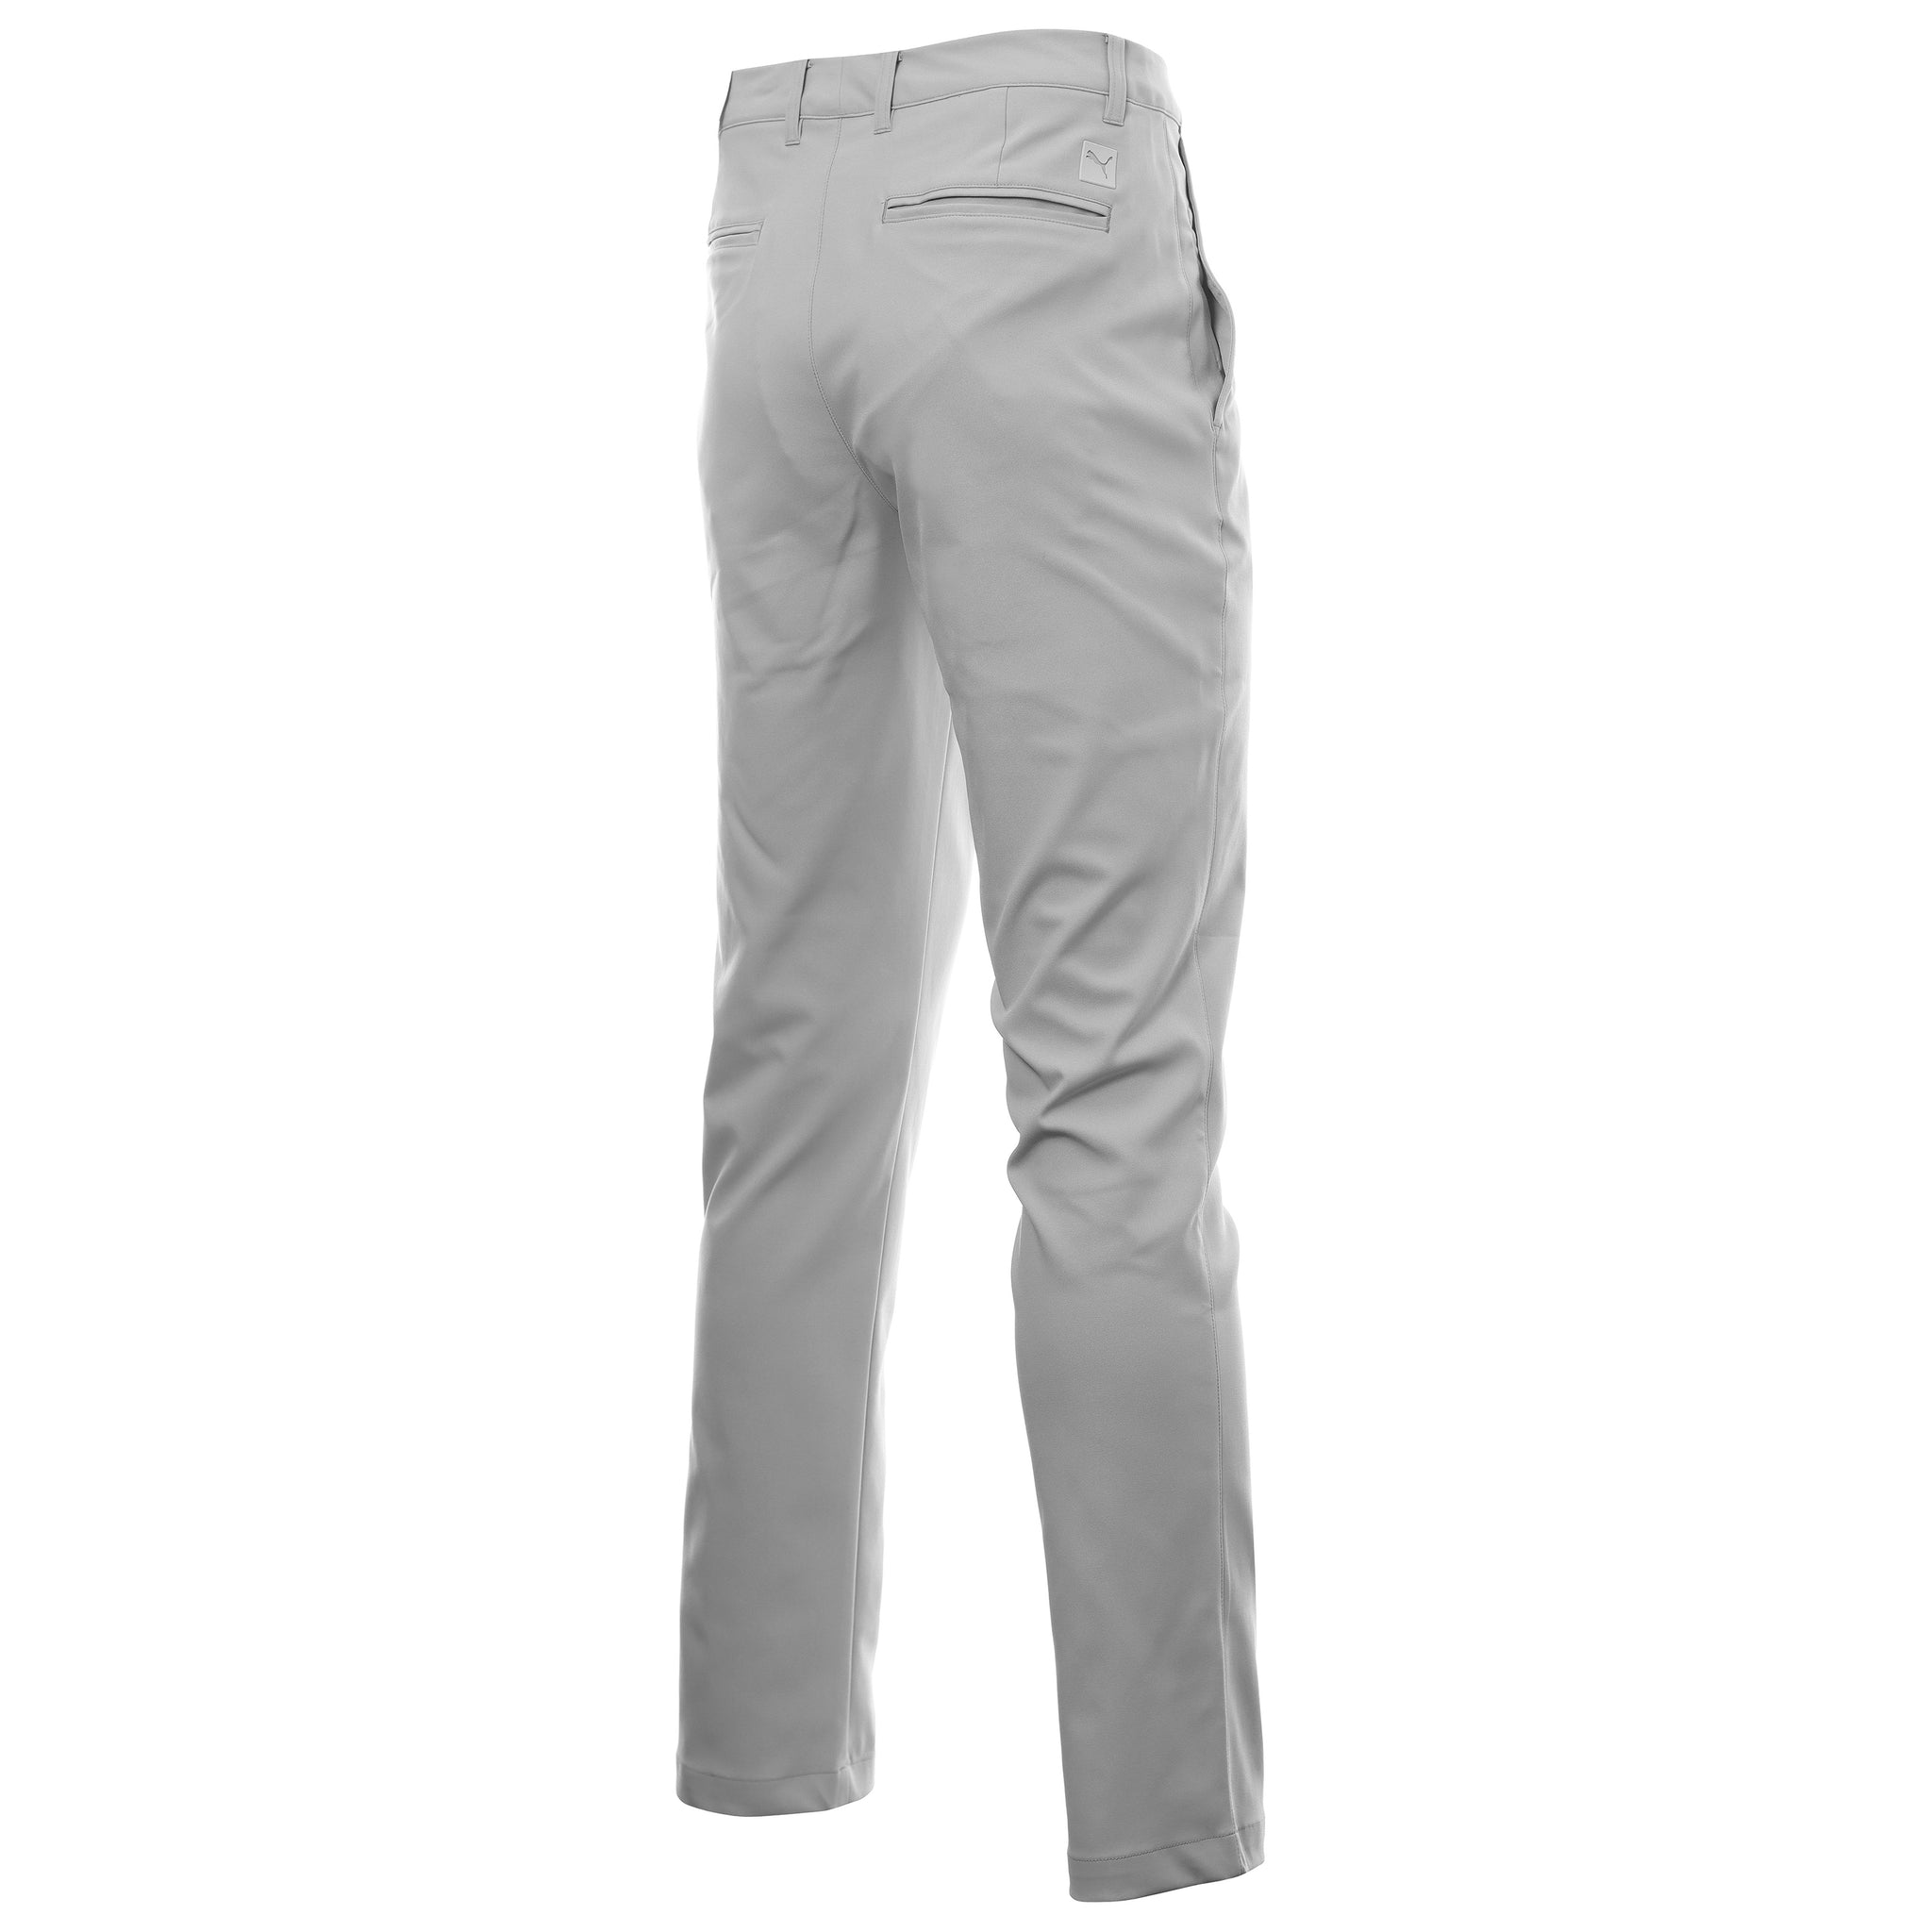 puma-golf-dealer-tailored-pant-535524-ash-grey-04